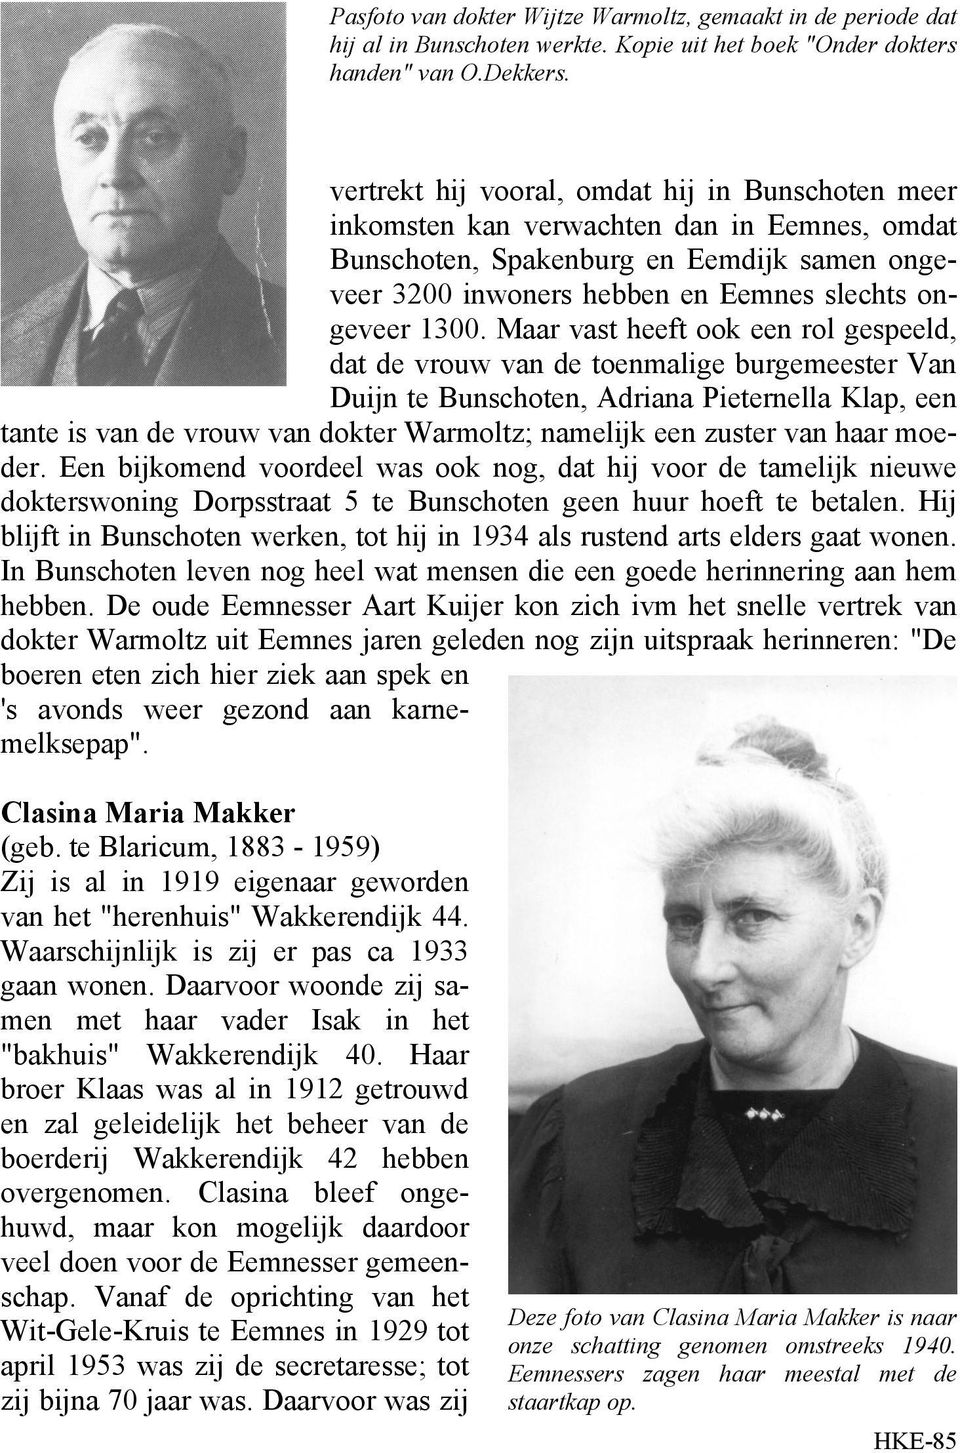 Maar vast heeft ook een rol gespeeld, dat de vrouw van de toenmalige burgemeester Van Duijn te Bunschoten, Adriana Pieternella Klap, een tante is van de vrouw van dokter Warmoltz; namelijk een zuster